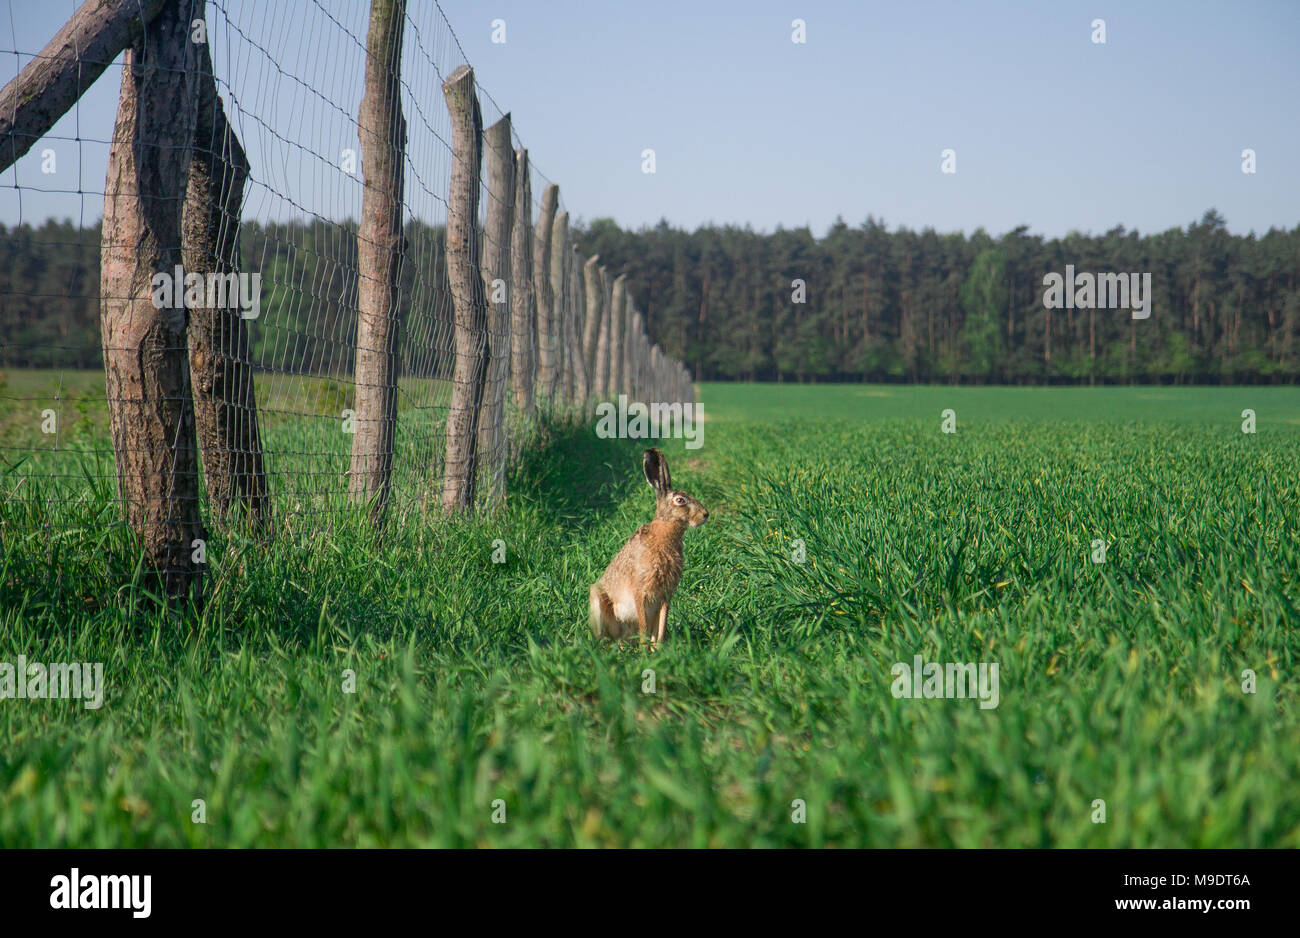 Europäische hase Lepus europaeus Sitzen im Feld mit einem Zaun in der Nähe. Stockfoto